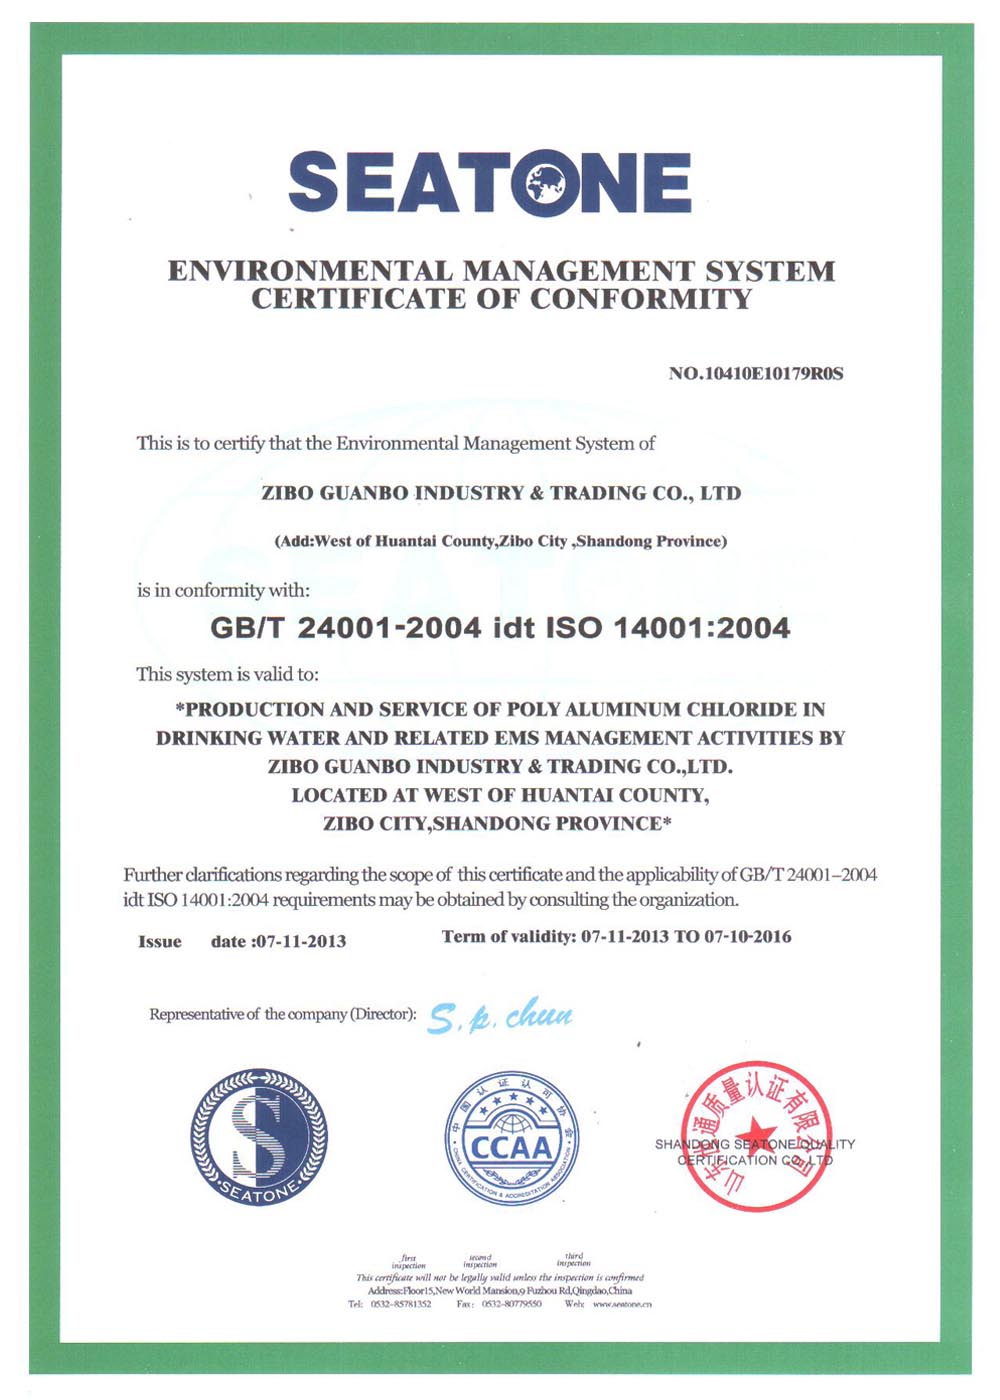 GB/T 24001-2004 idt ISO 14001:2004